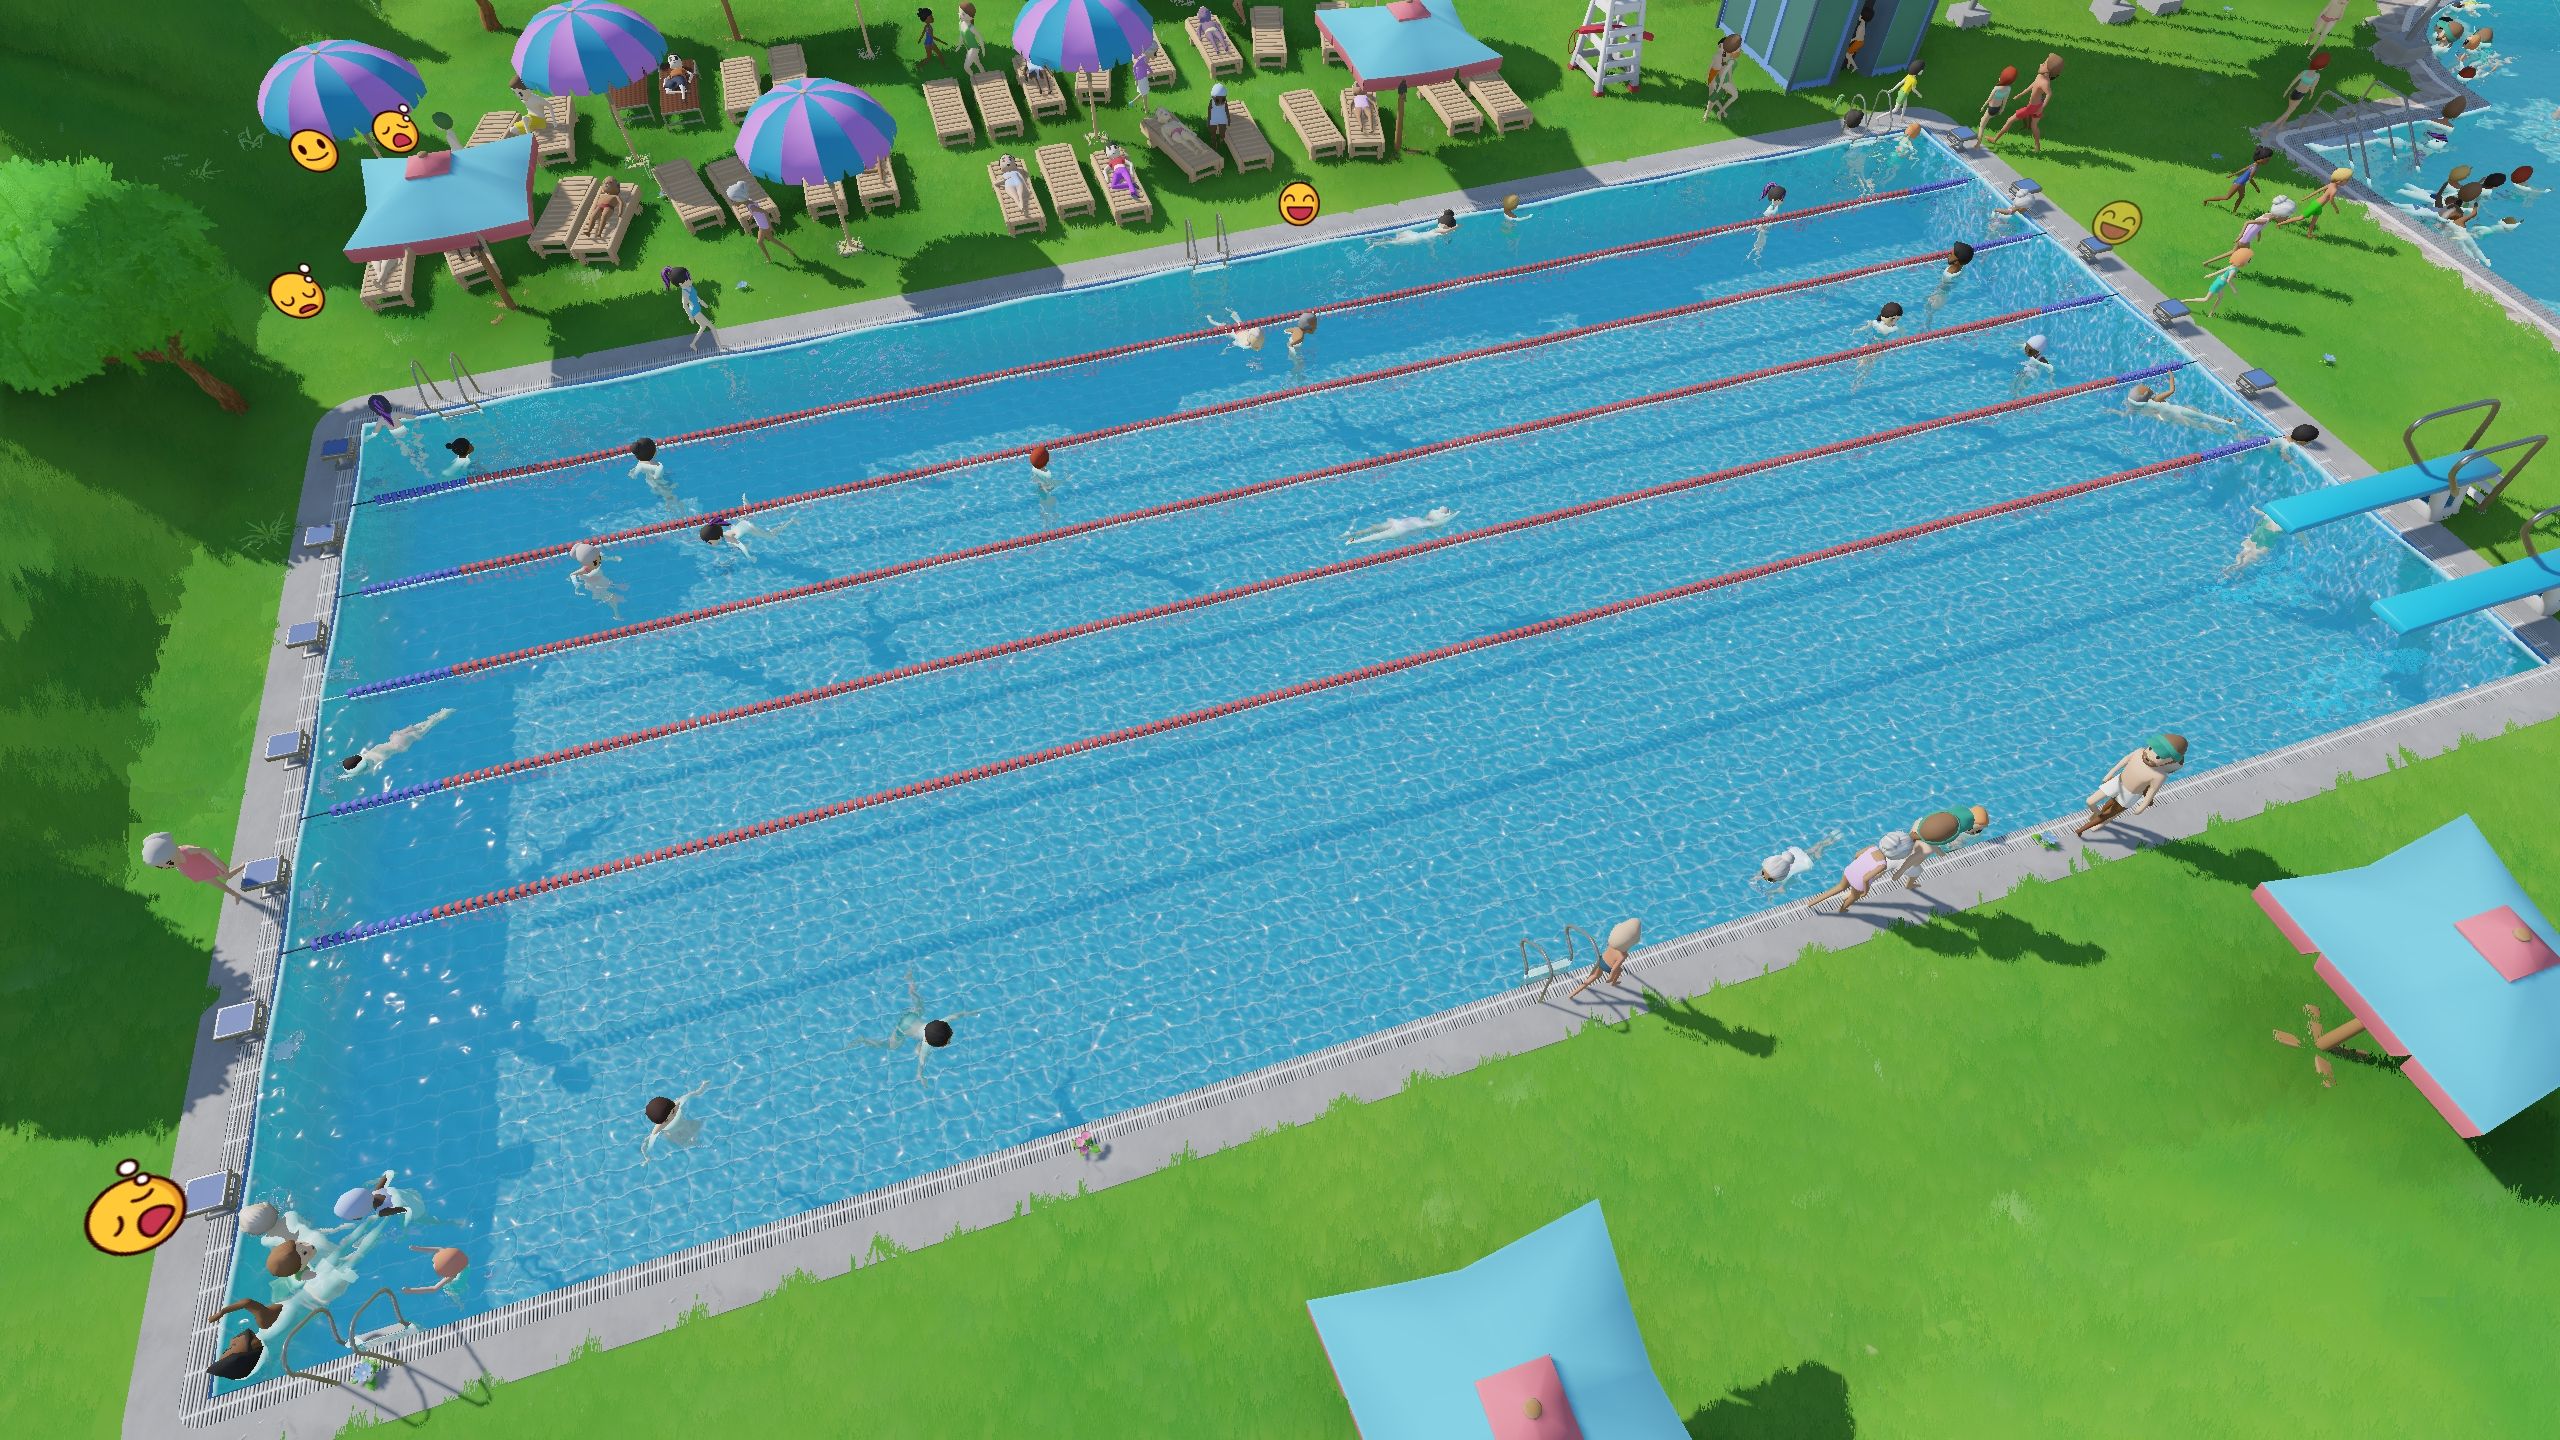 Sportbecken mit Sprungblöcken, -brettern und Schwimmlinien